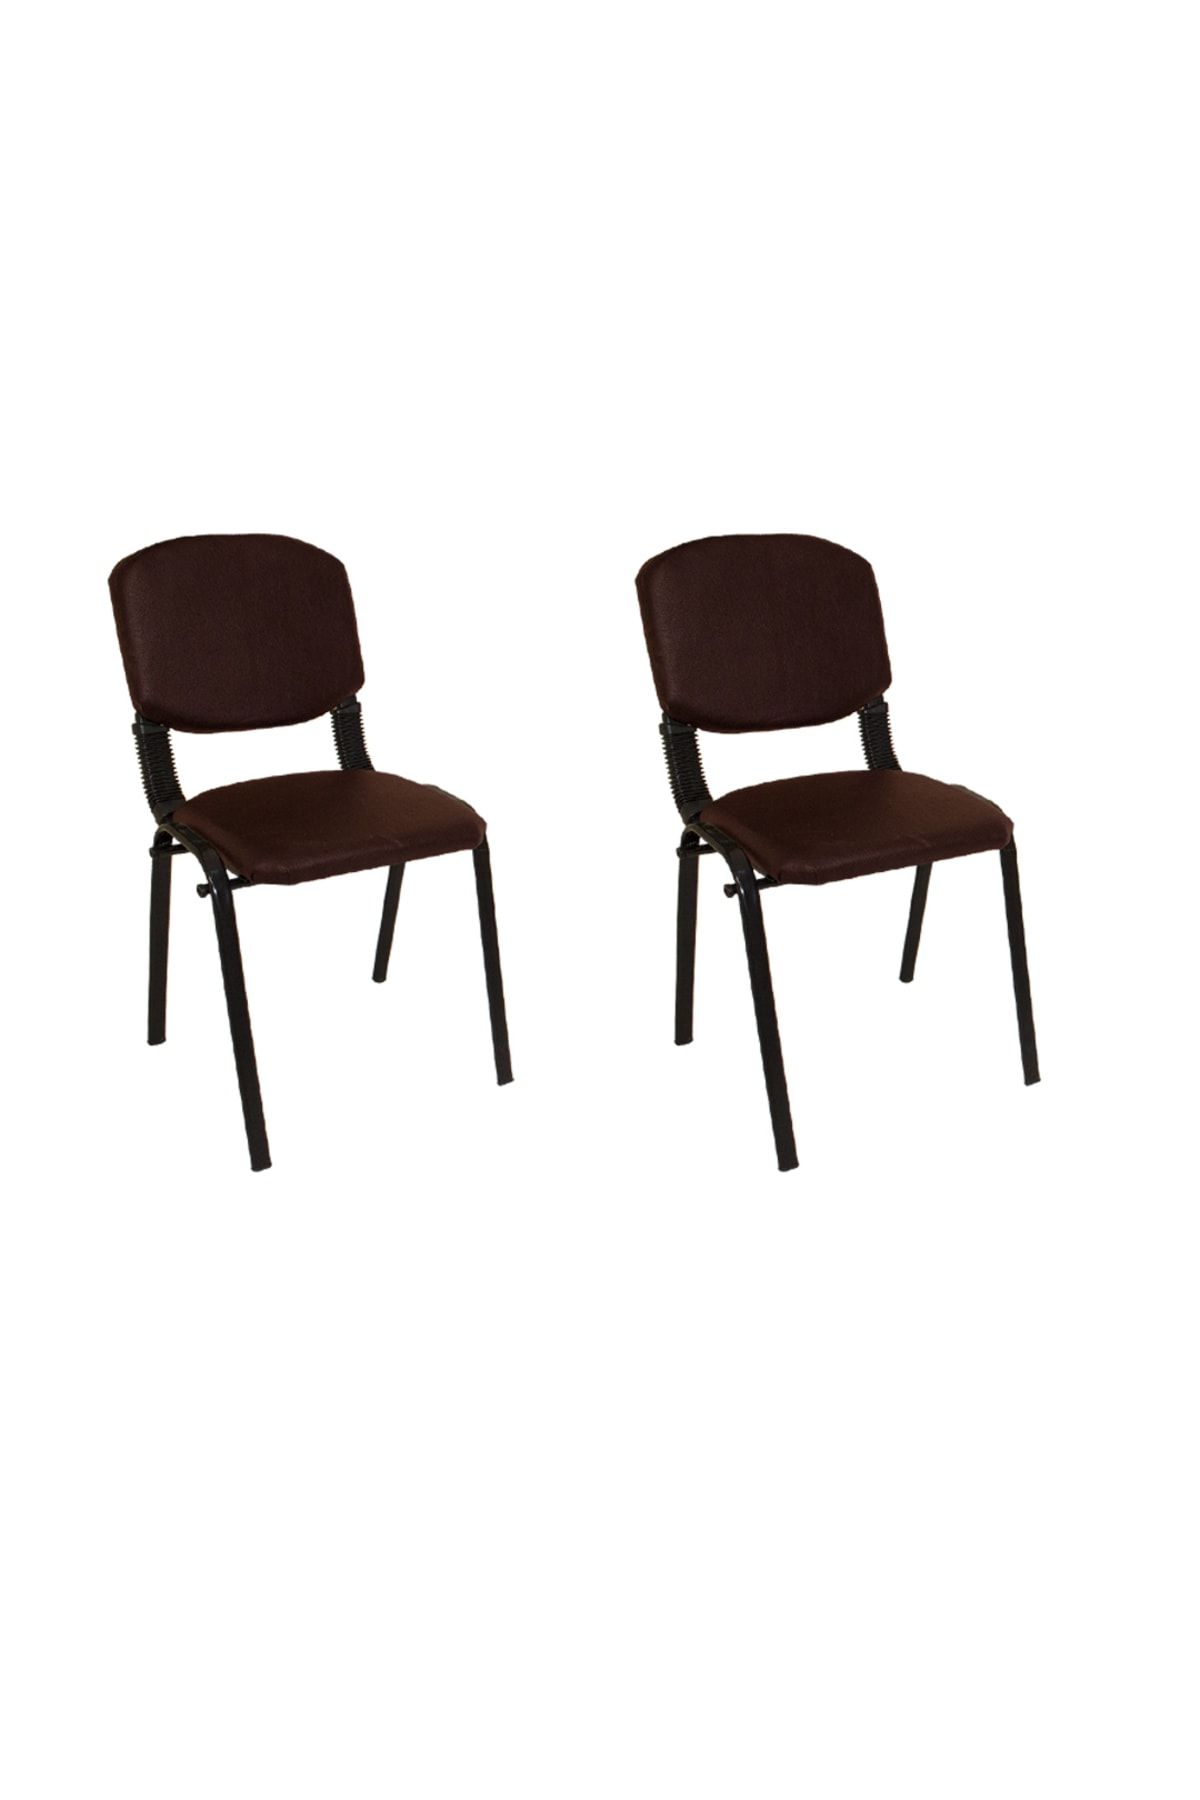 Dockers Form Ofis Ve Toplantı Sandalyesi (2 Adet) - Kahve